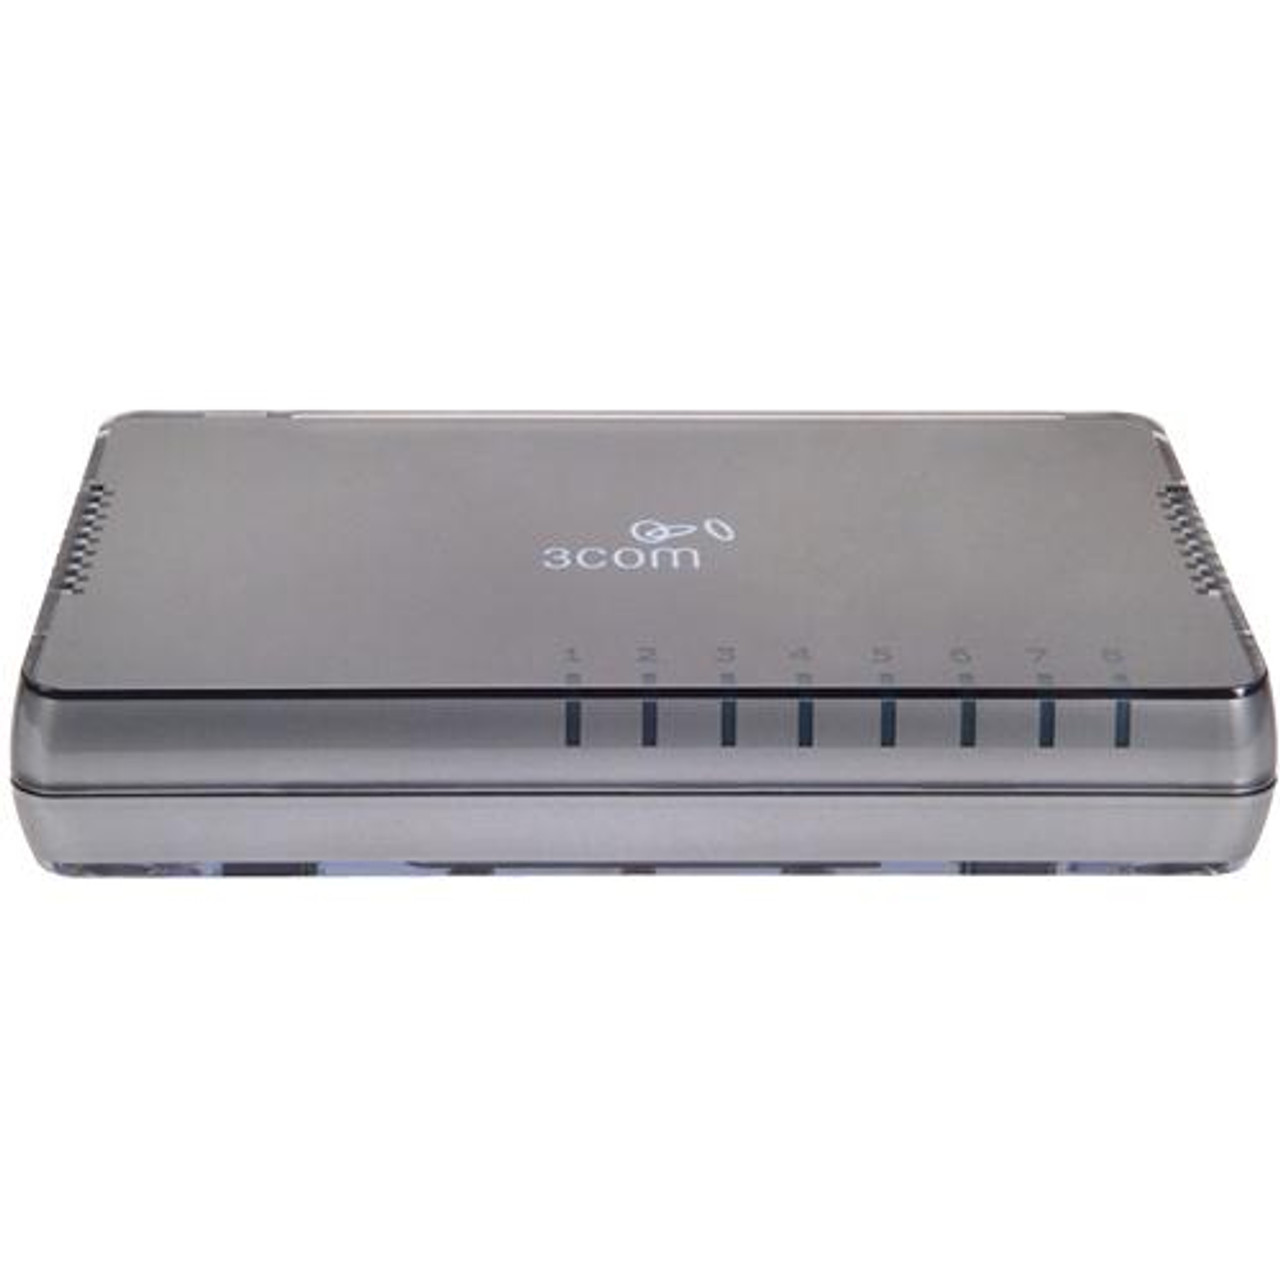 JD871A HP V1405-8G Ethernet Switch 8 Port RJ-45 8 10/100/1000Base-T (Refurbished)